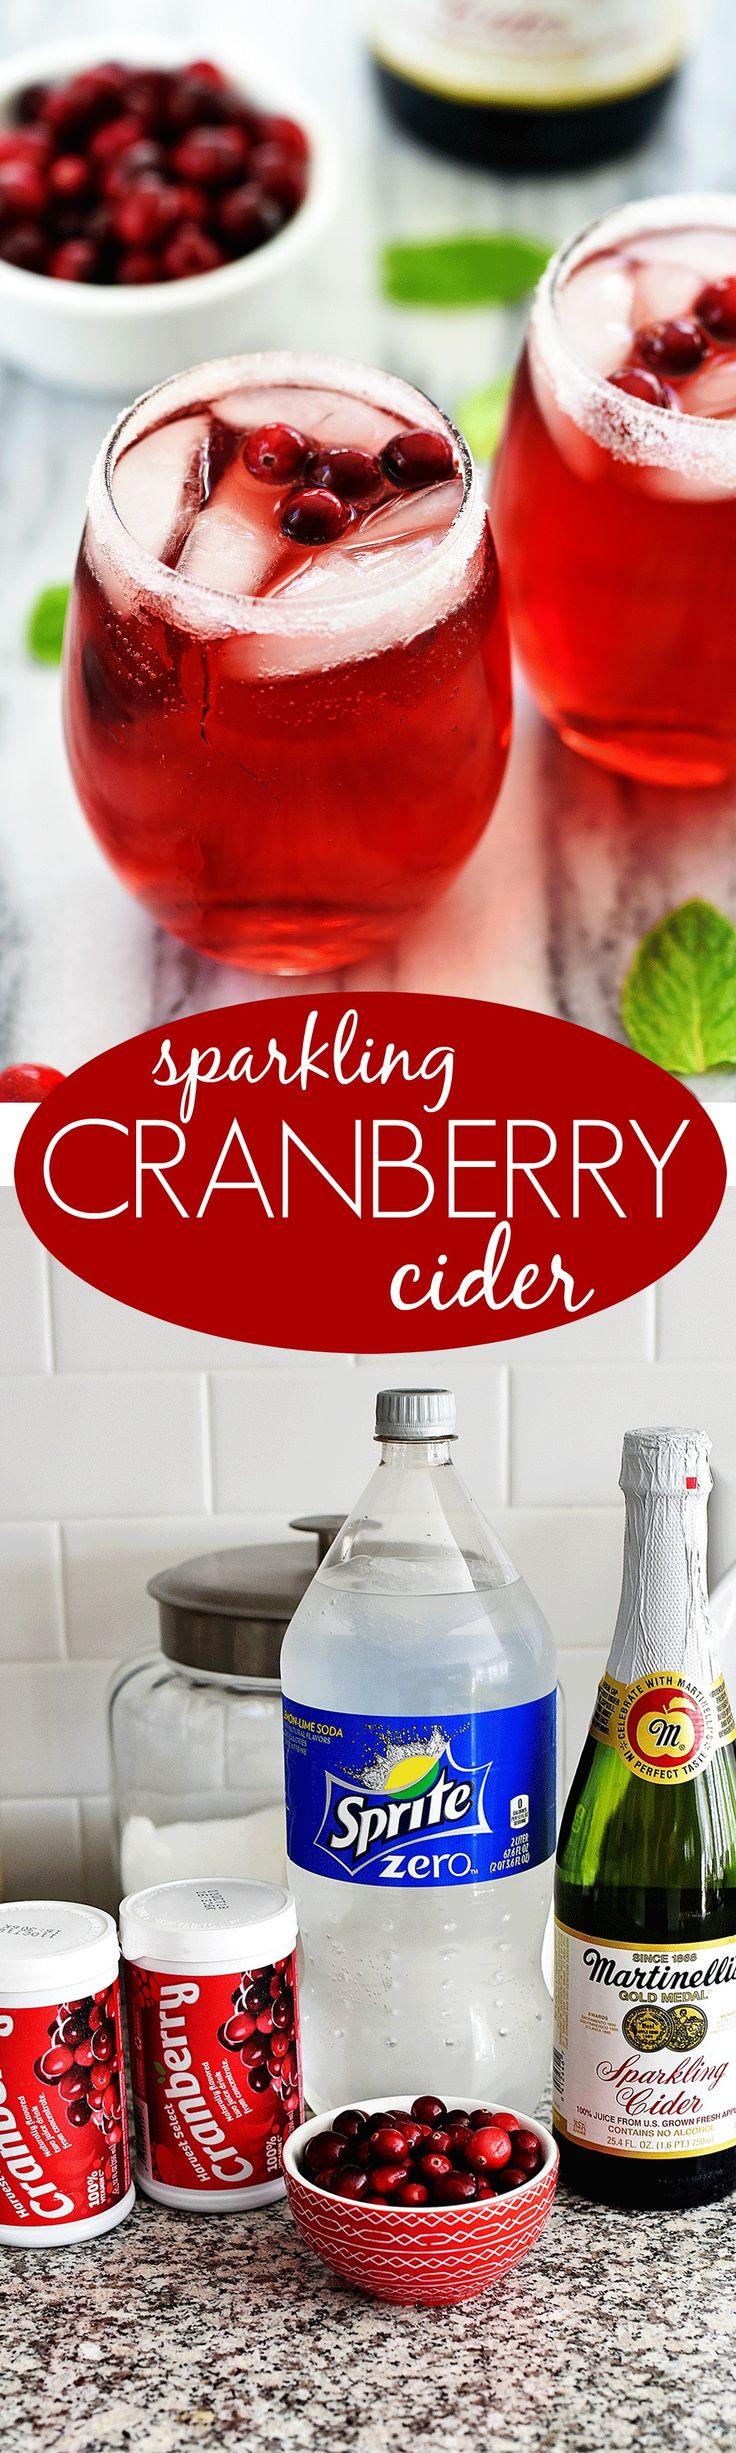 Hochzeit - Sparkling Cranberry Cider